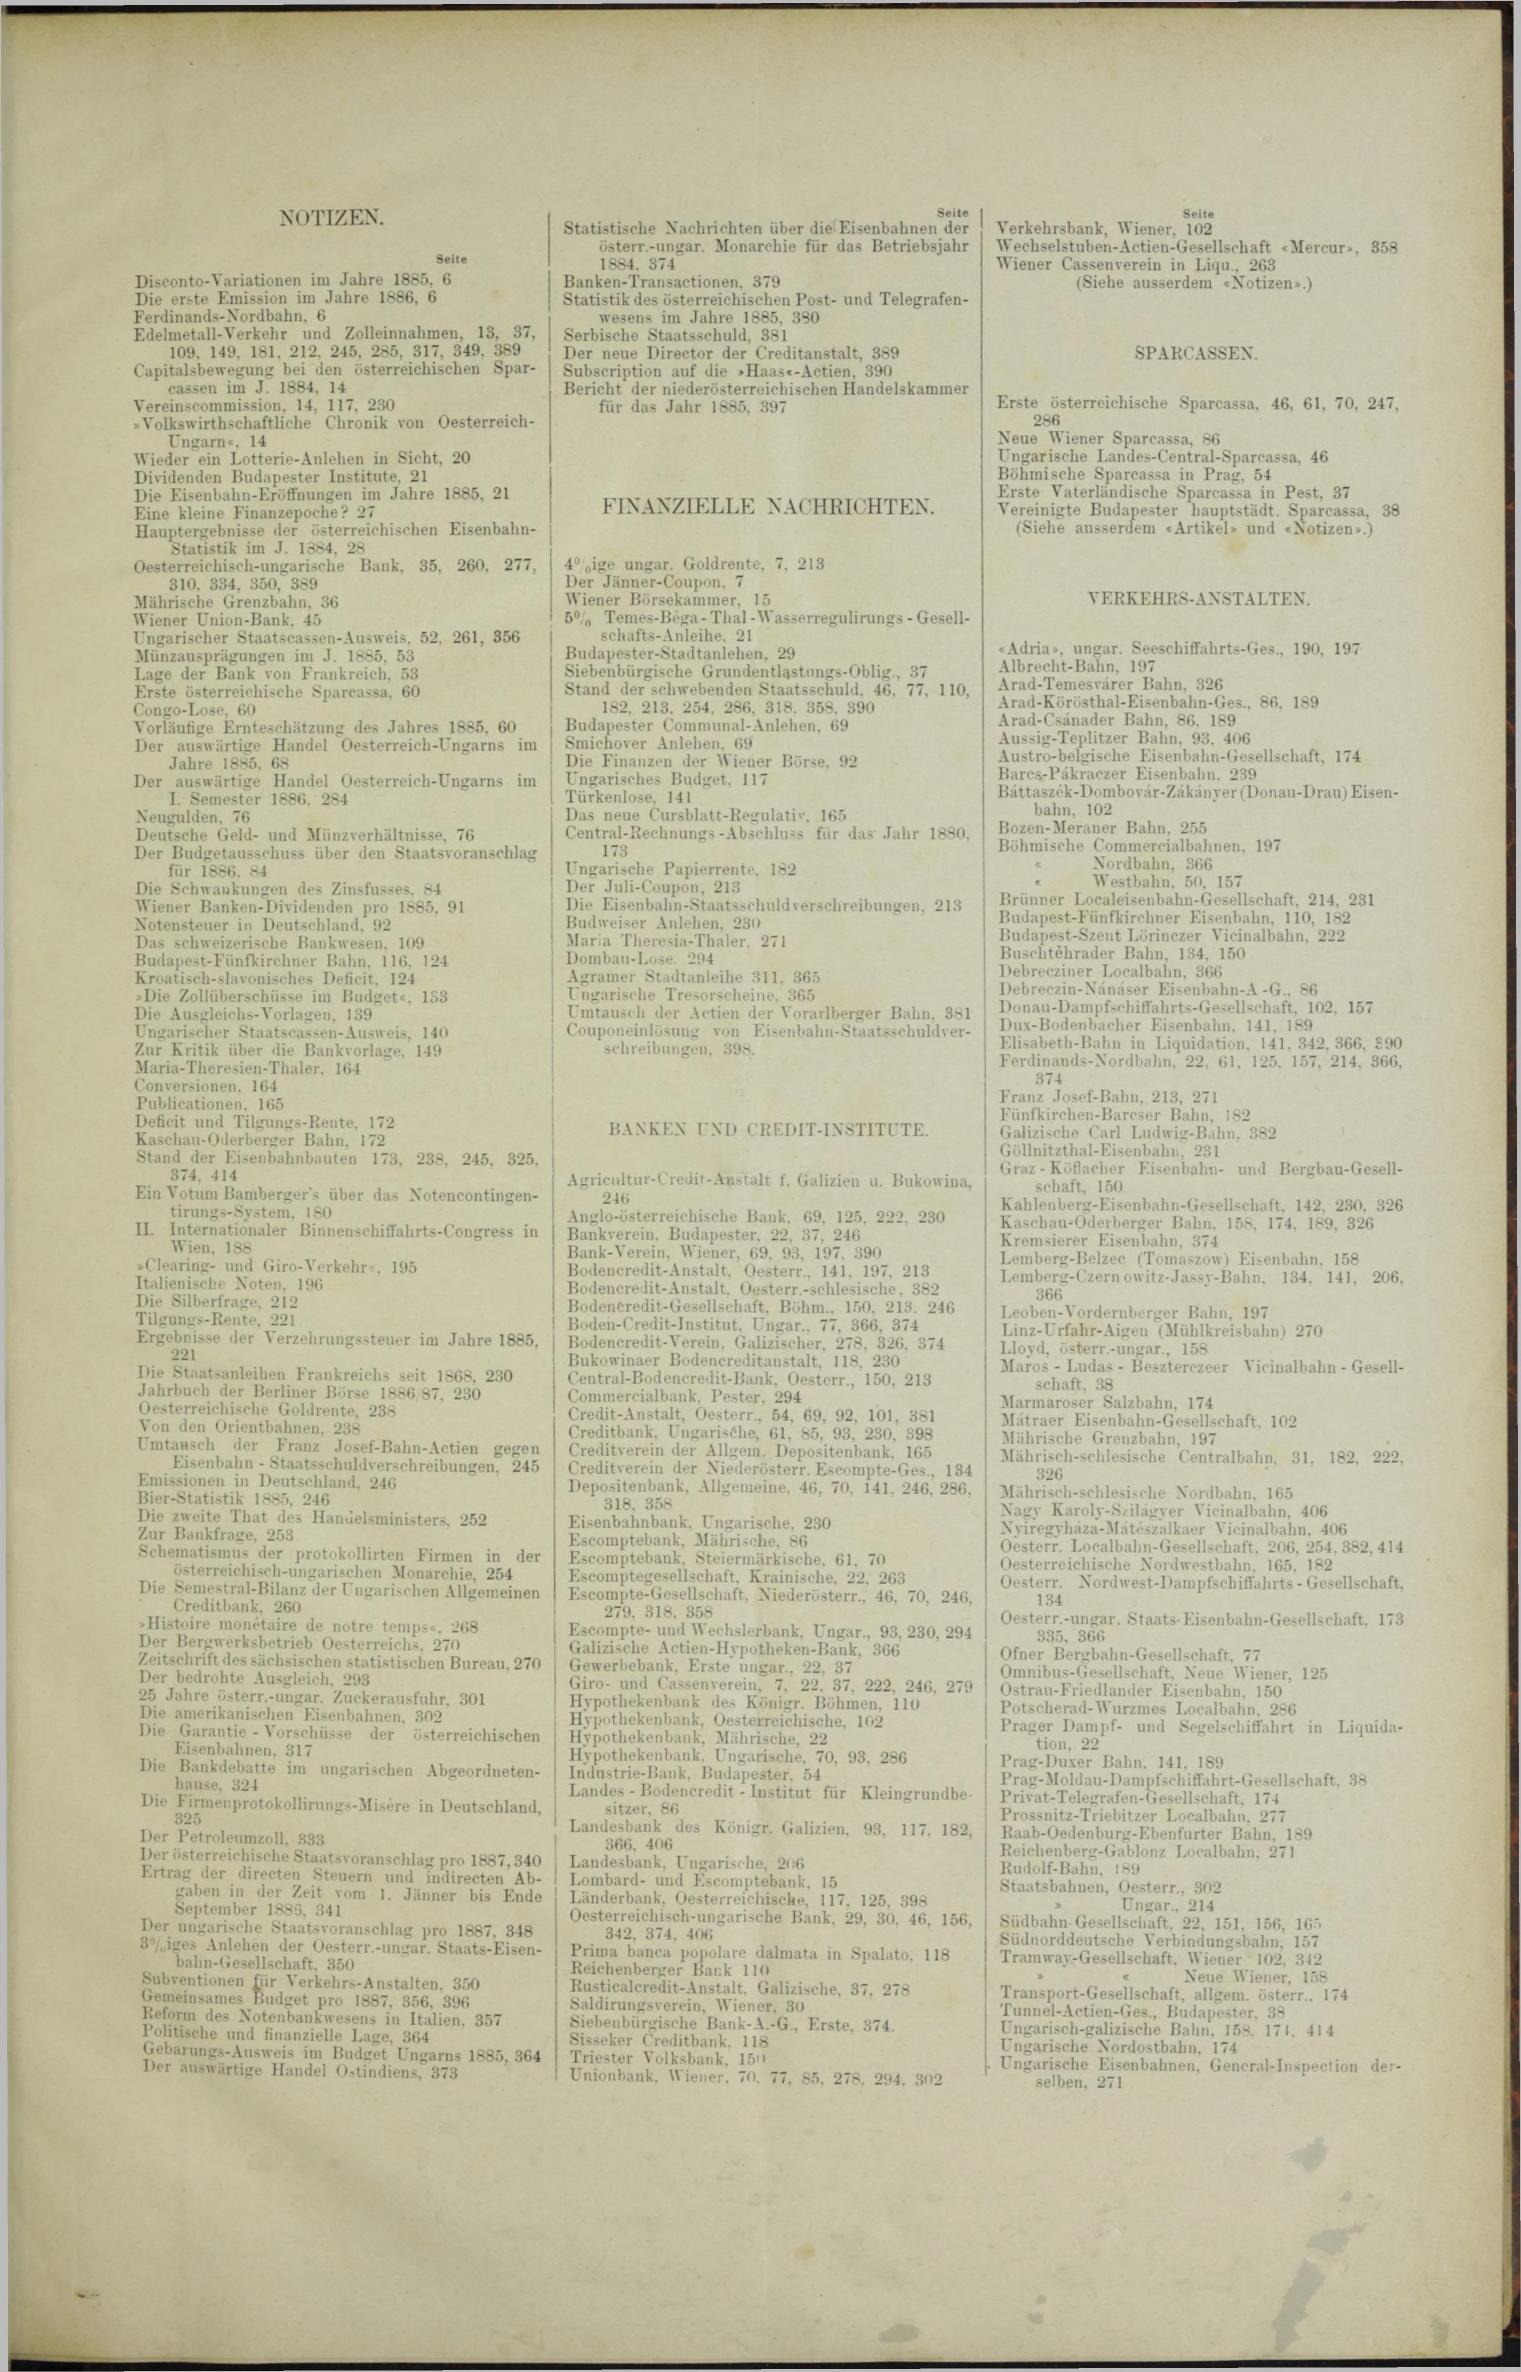 Der Tresor 11.03.1886 - Seite 11